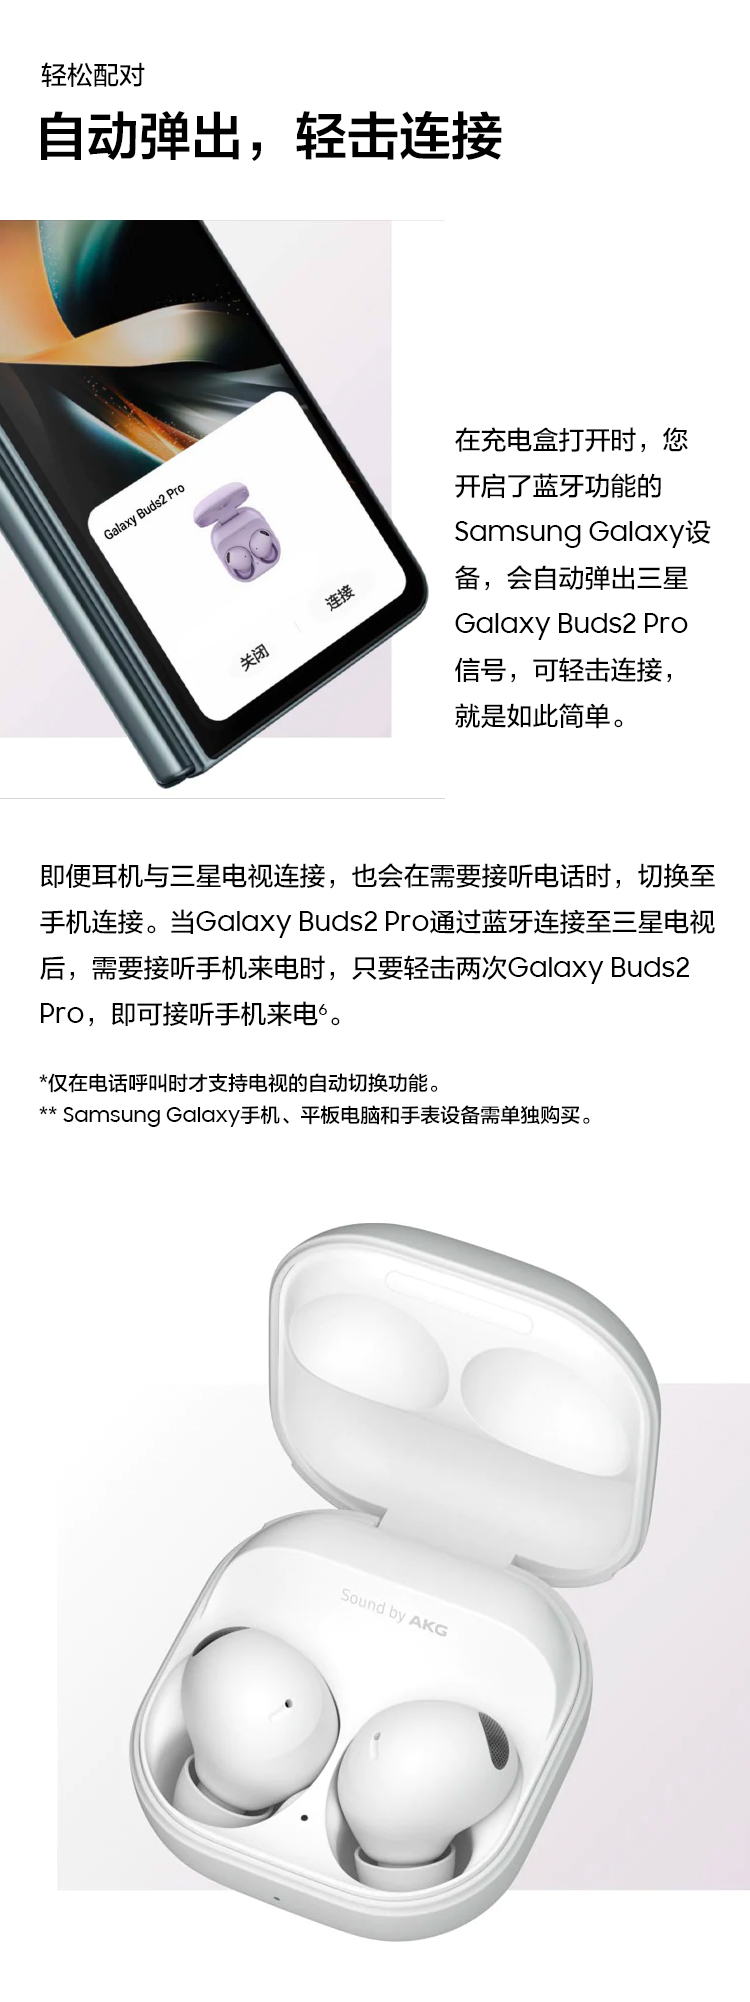 购买Galaxy Buds2 Pro | 价格及优惠| 中国三星商城